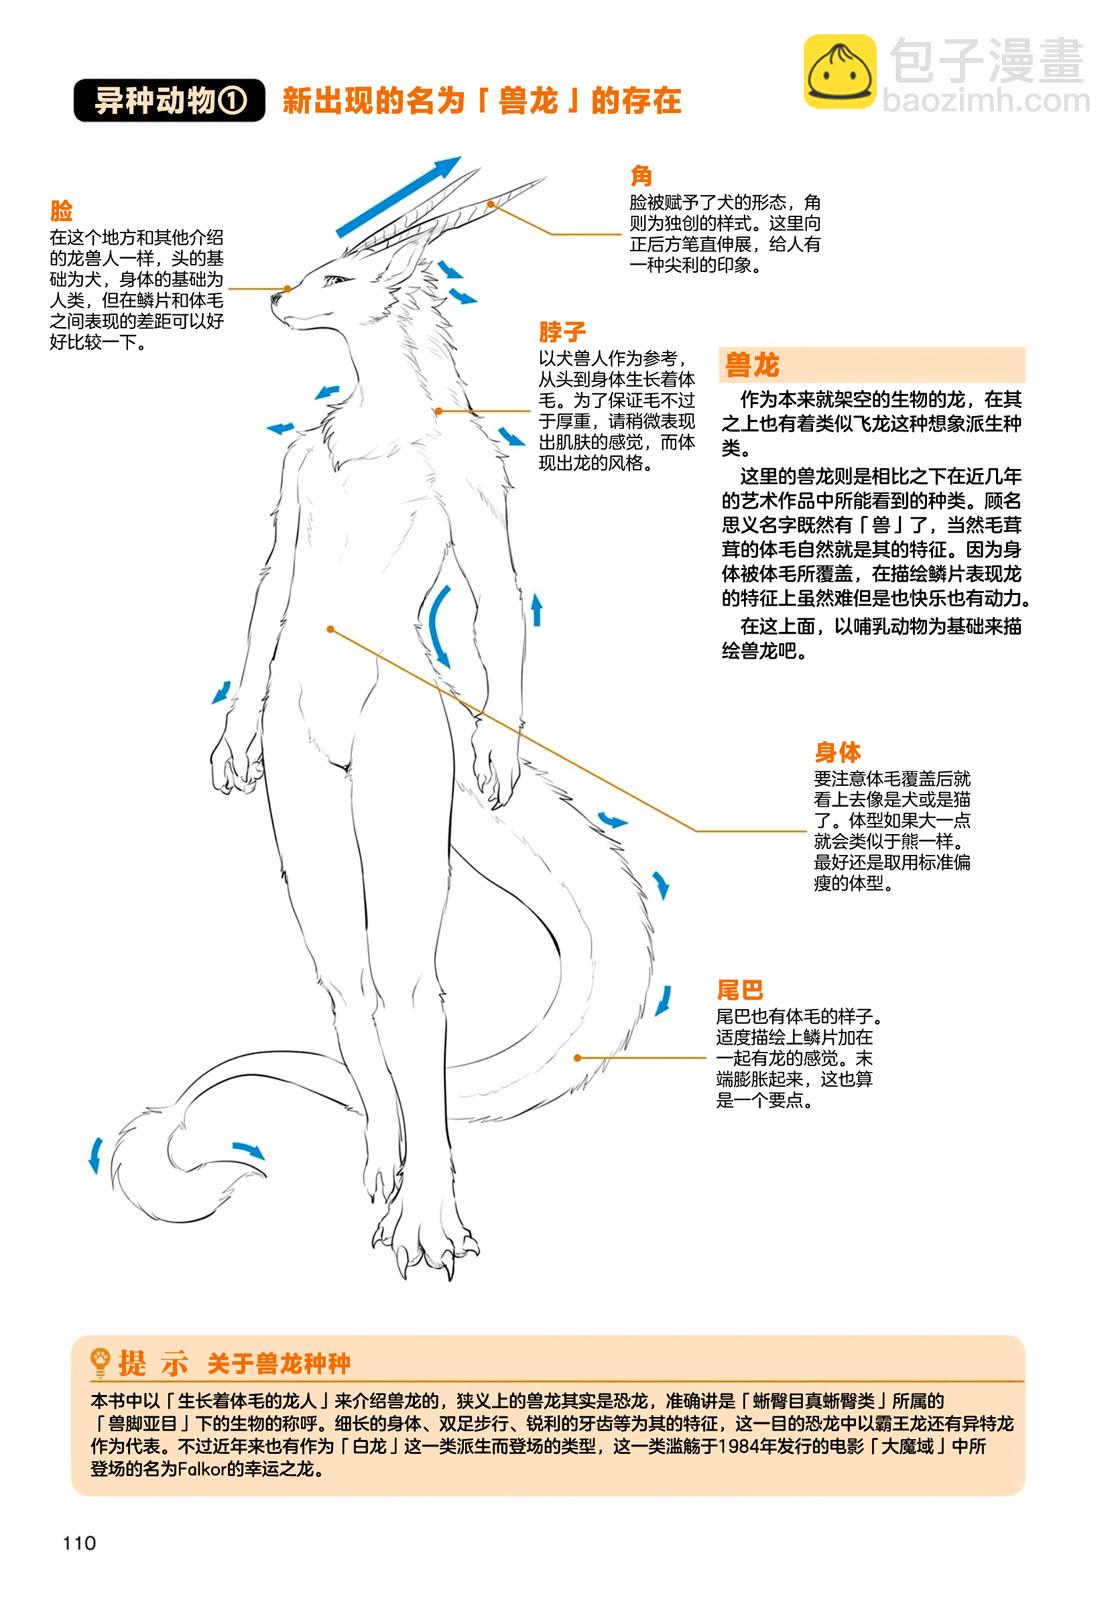 兽人的描绘方法 -从真实系兽人到抽象系兽人 - 第3.2话 天空生物 龙兽人的描绘方法 - 3